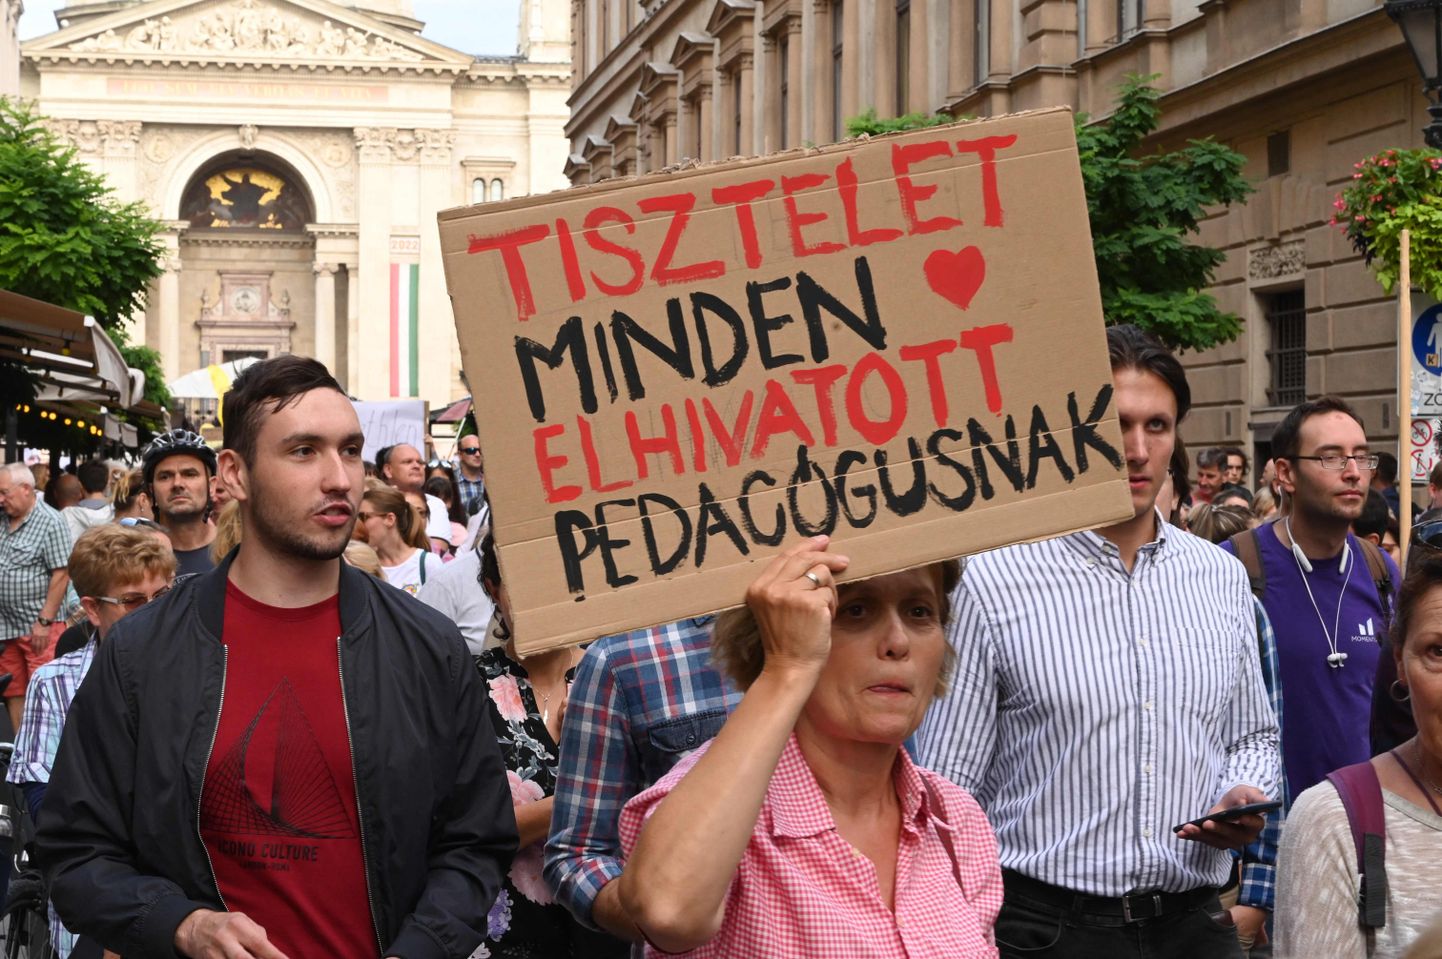 Õpetajate ja nende toetajate meeleavaldus Budapestis 2. septembril 2022. Plakatil seisab: "Lugupidamine kõigile pühendunud õpetajatele".